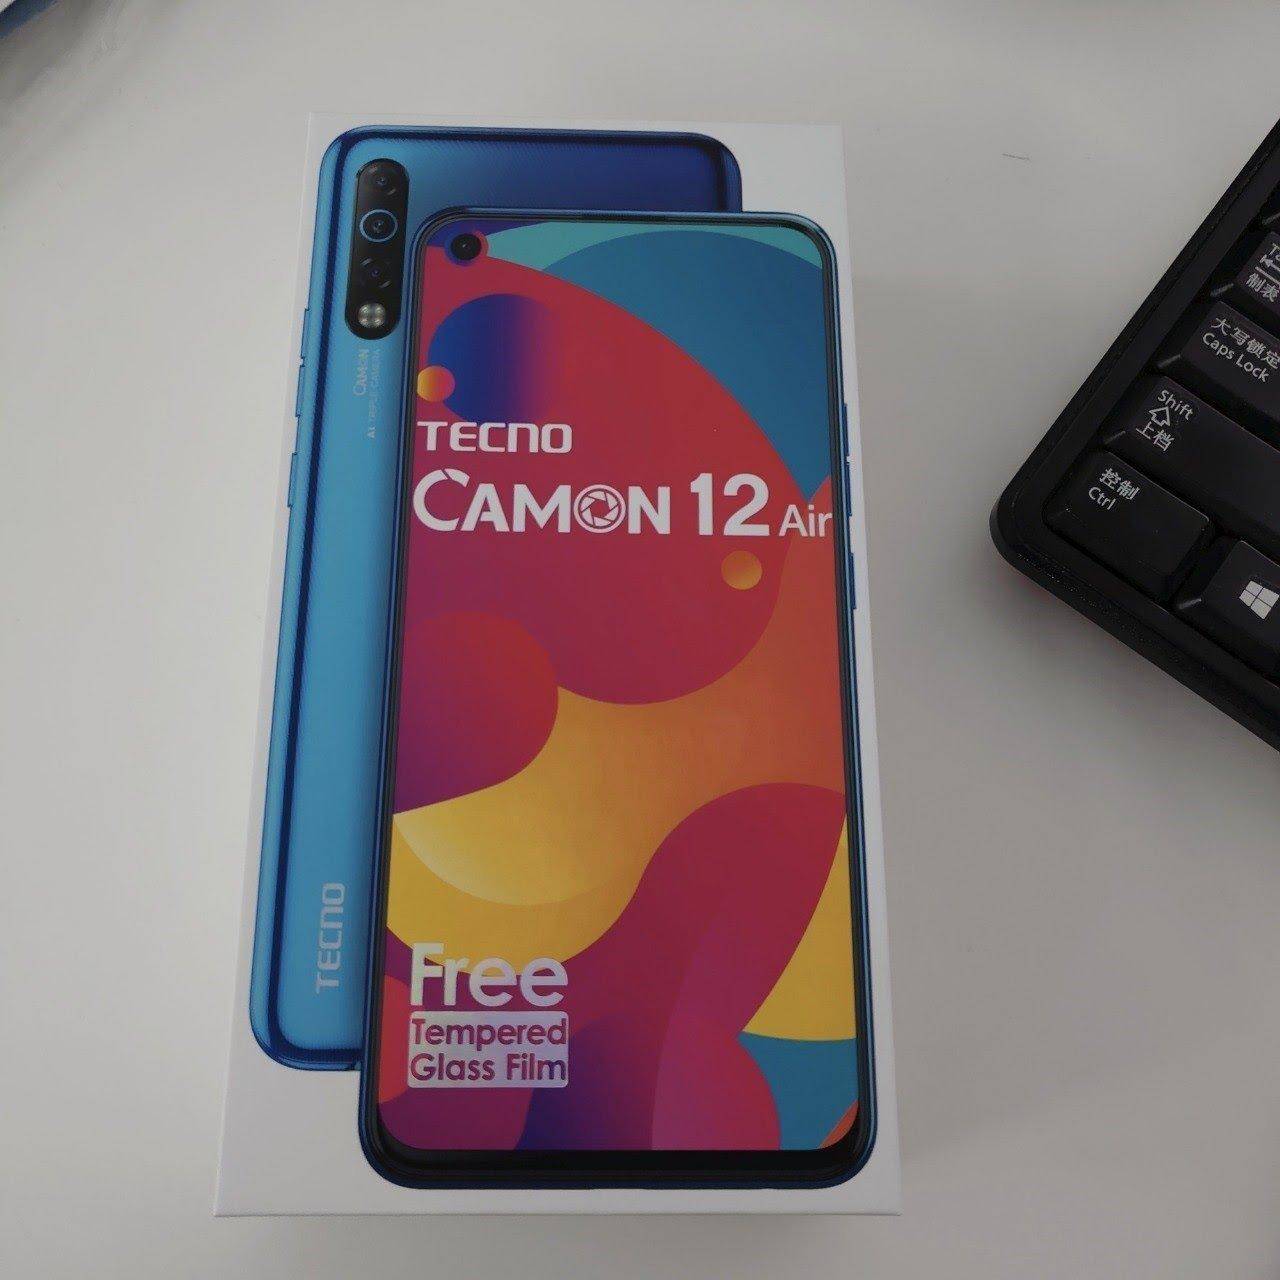 Tecno Camon 12 Air स्मार्टफोन को भारत में लाँच किया जायेगा इस दिन